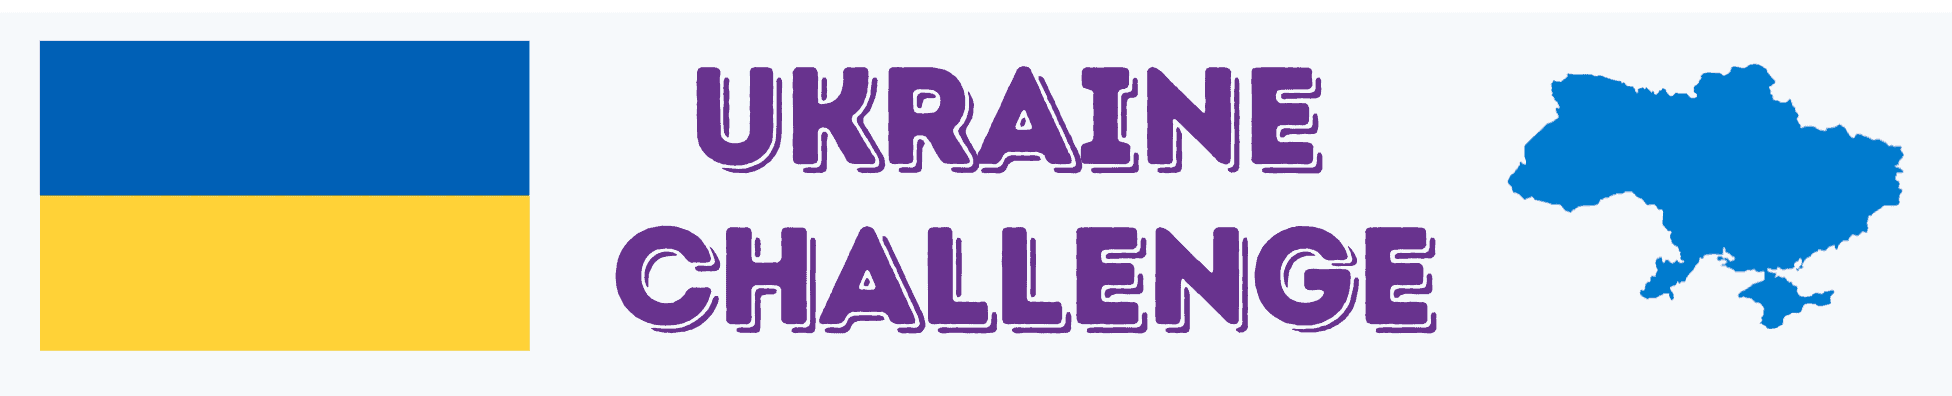 Ukraine-challenge-activities